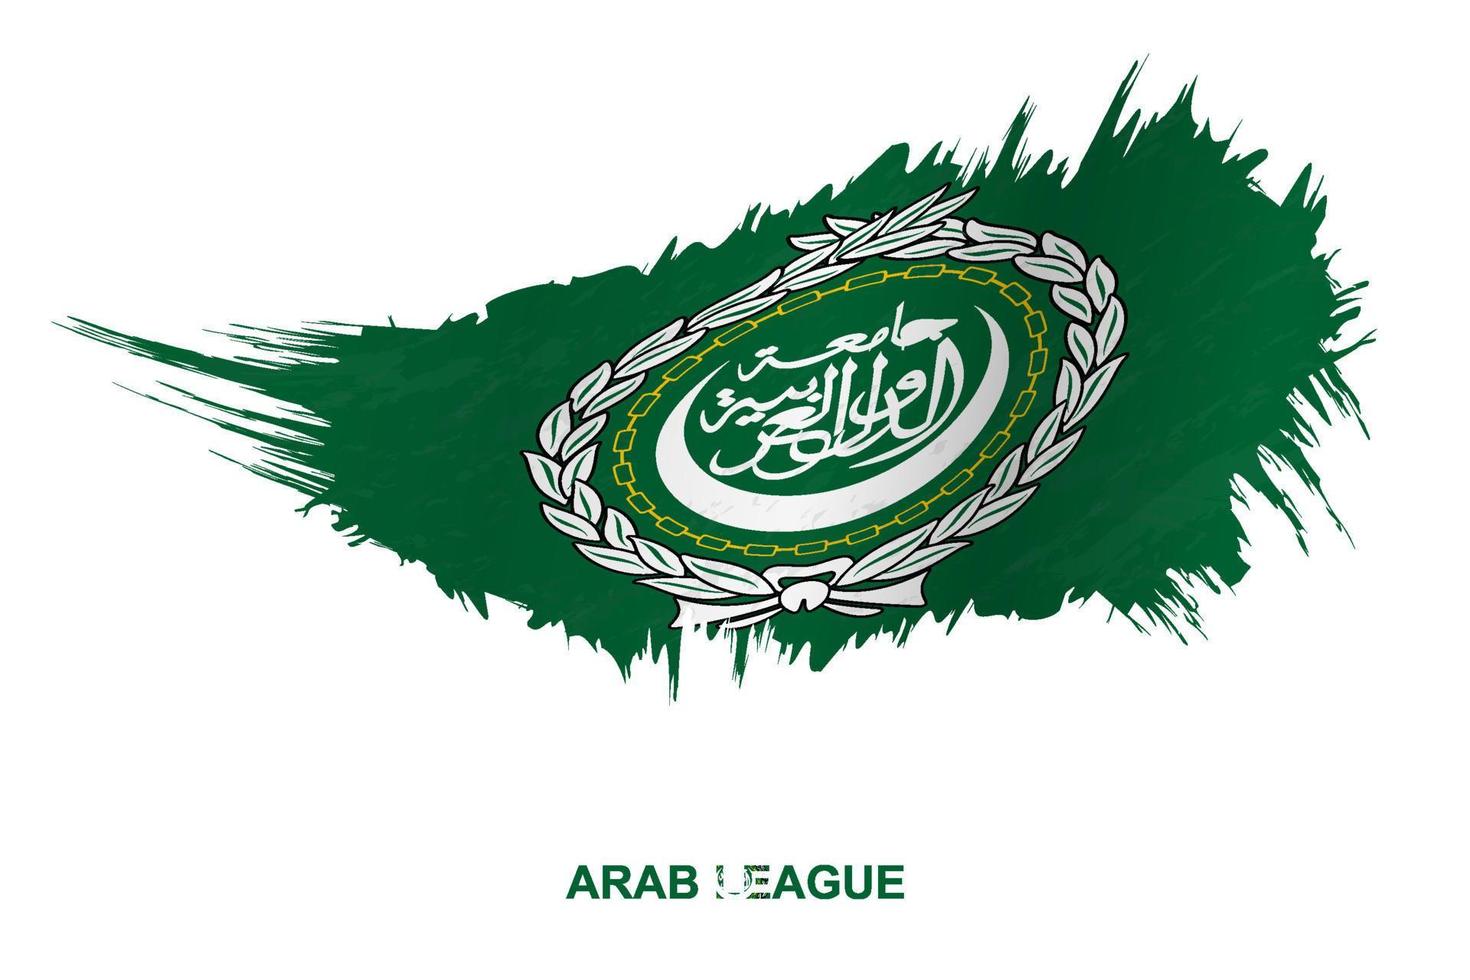 bandera de la liga árabe en estilo grunge con efecto ondulante. vector